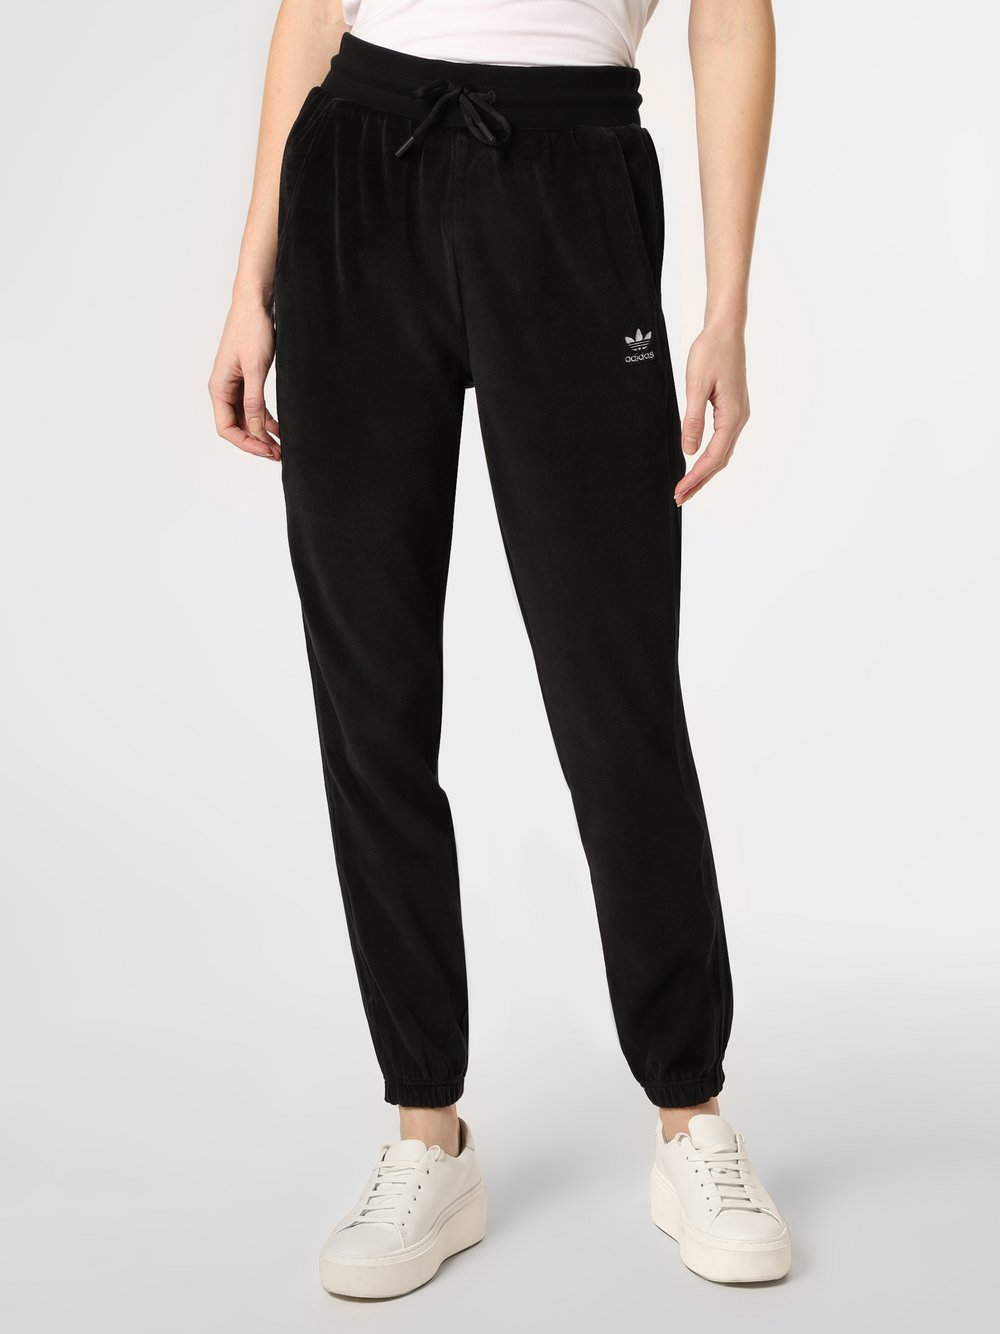 Adidas Originals - Damskie spodnie dresowe, czarny